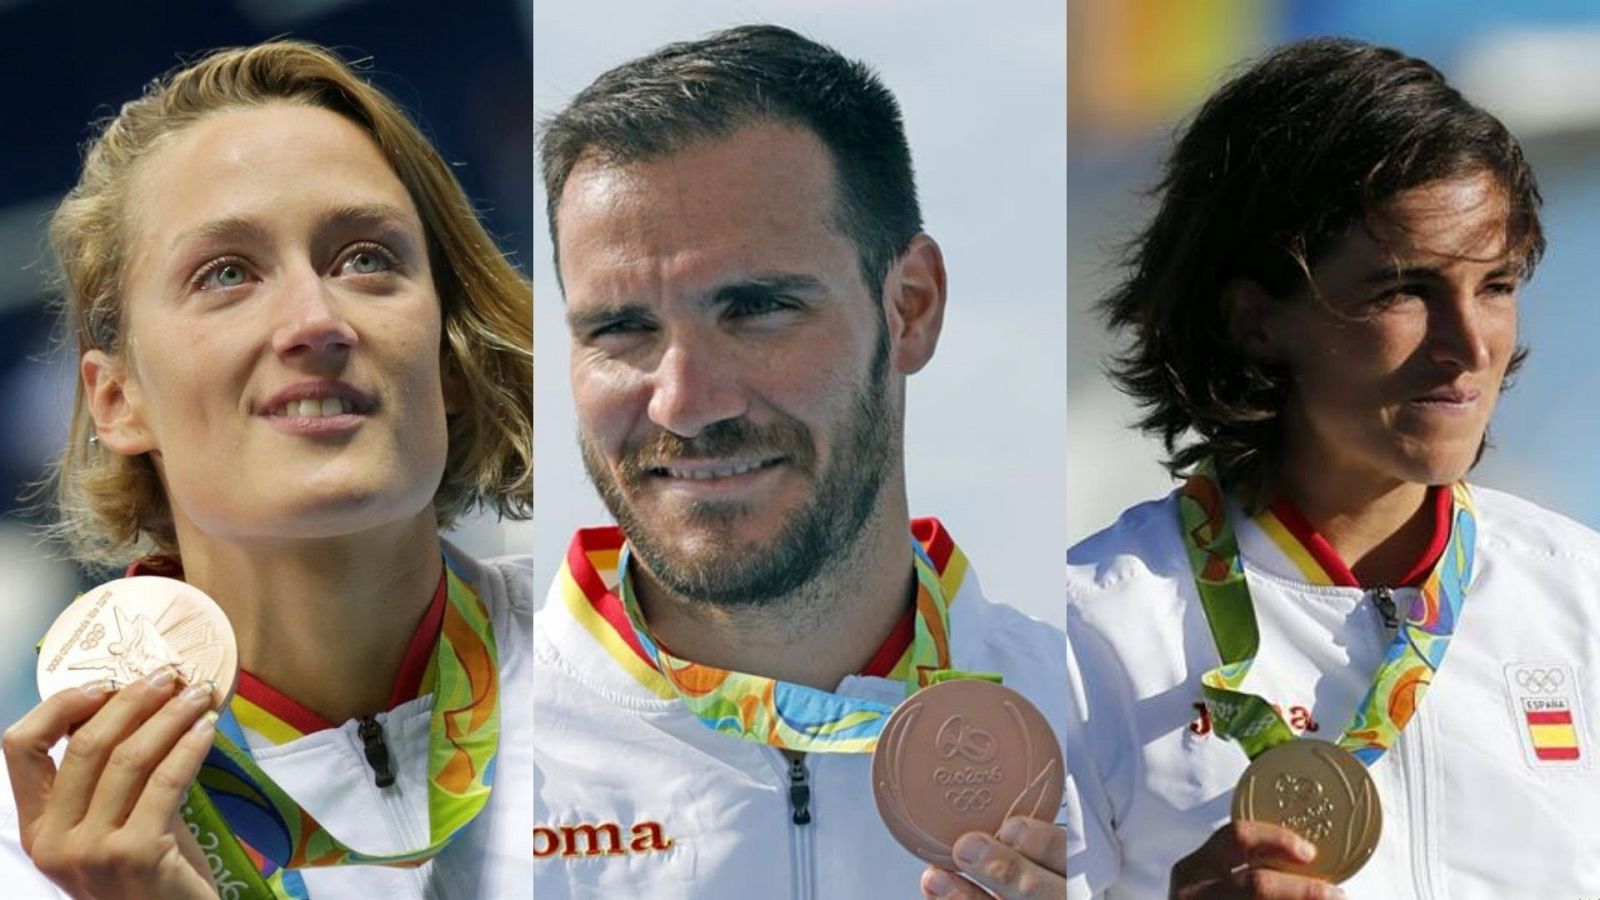 Belmonte, Craviotto y Chourraut, algunos de los deportistas españoles que podrían repetir medalla